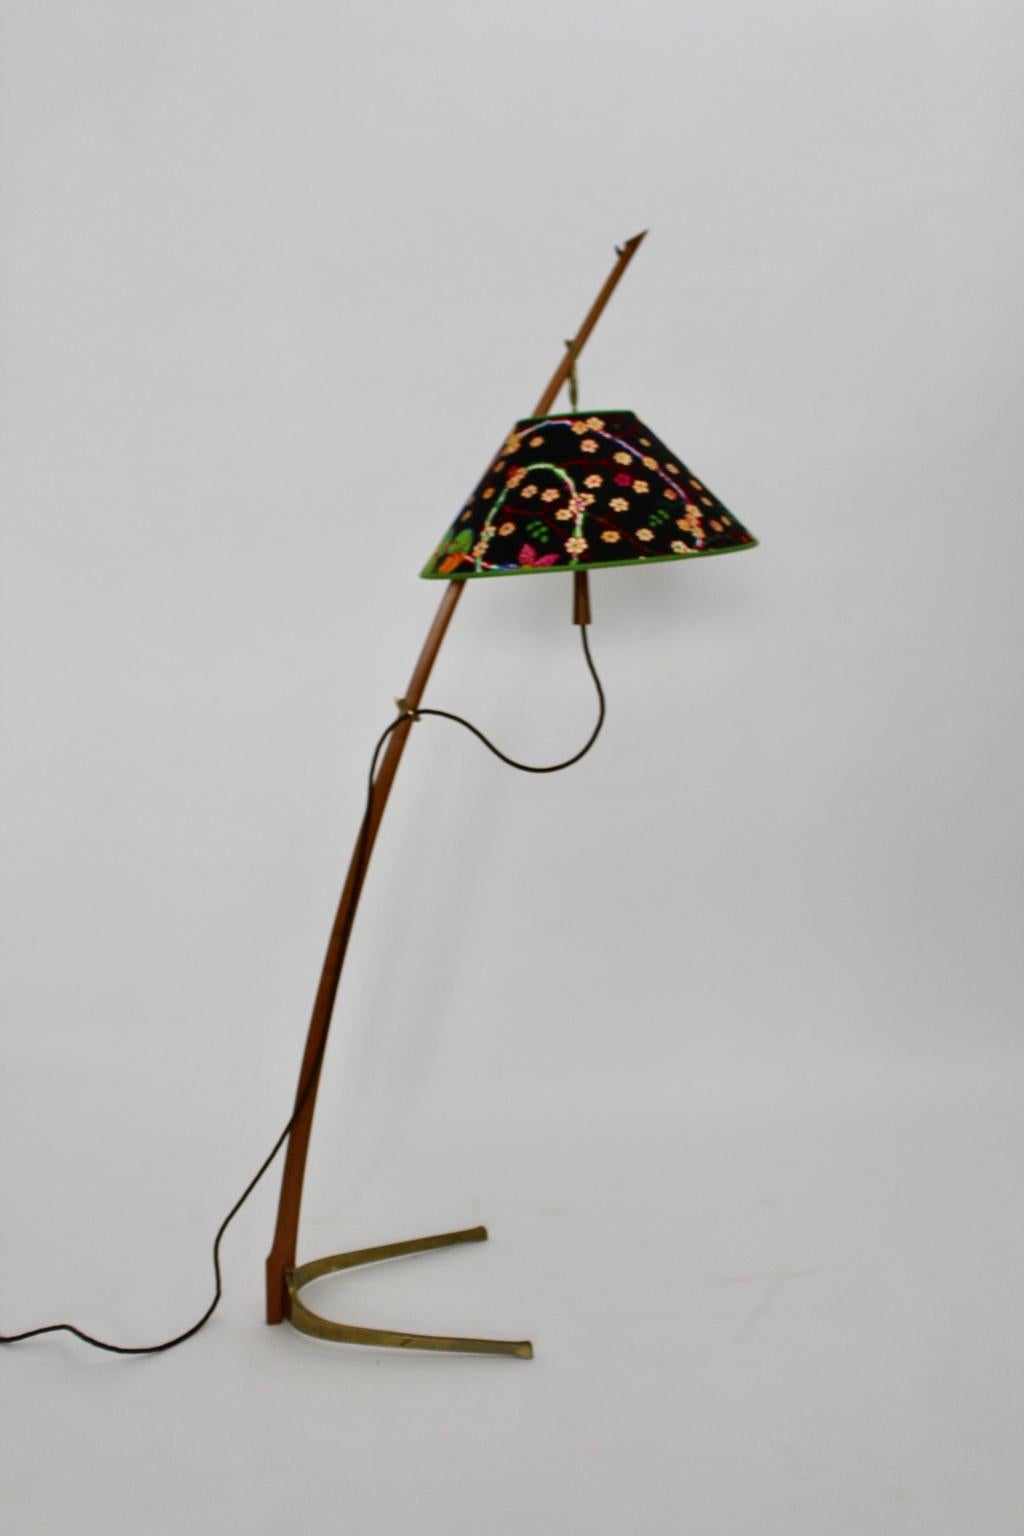 Lampadaire vintage Dornstab ou Thorn Stick en noyer et laiton par J. T. Kalmar vers 1952, Vienne.
Ce magnifique lampadaire viennois iconique et bien connu porte le numéro de modèle 2076.
Les attributs significatifs de la pièce sont la tige courbée